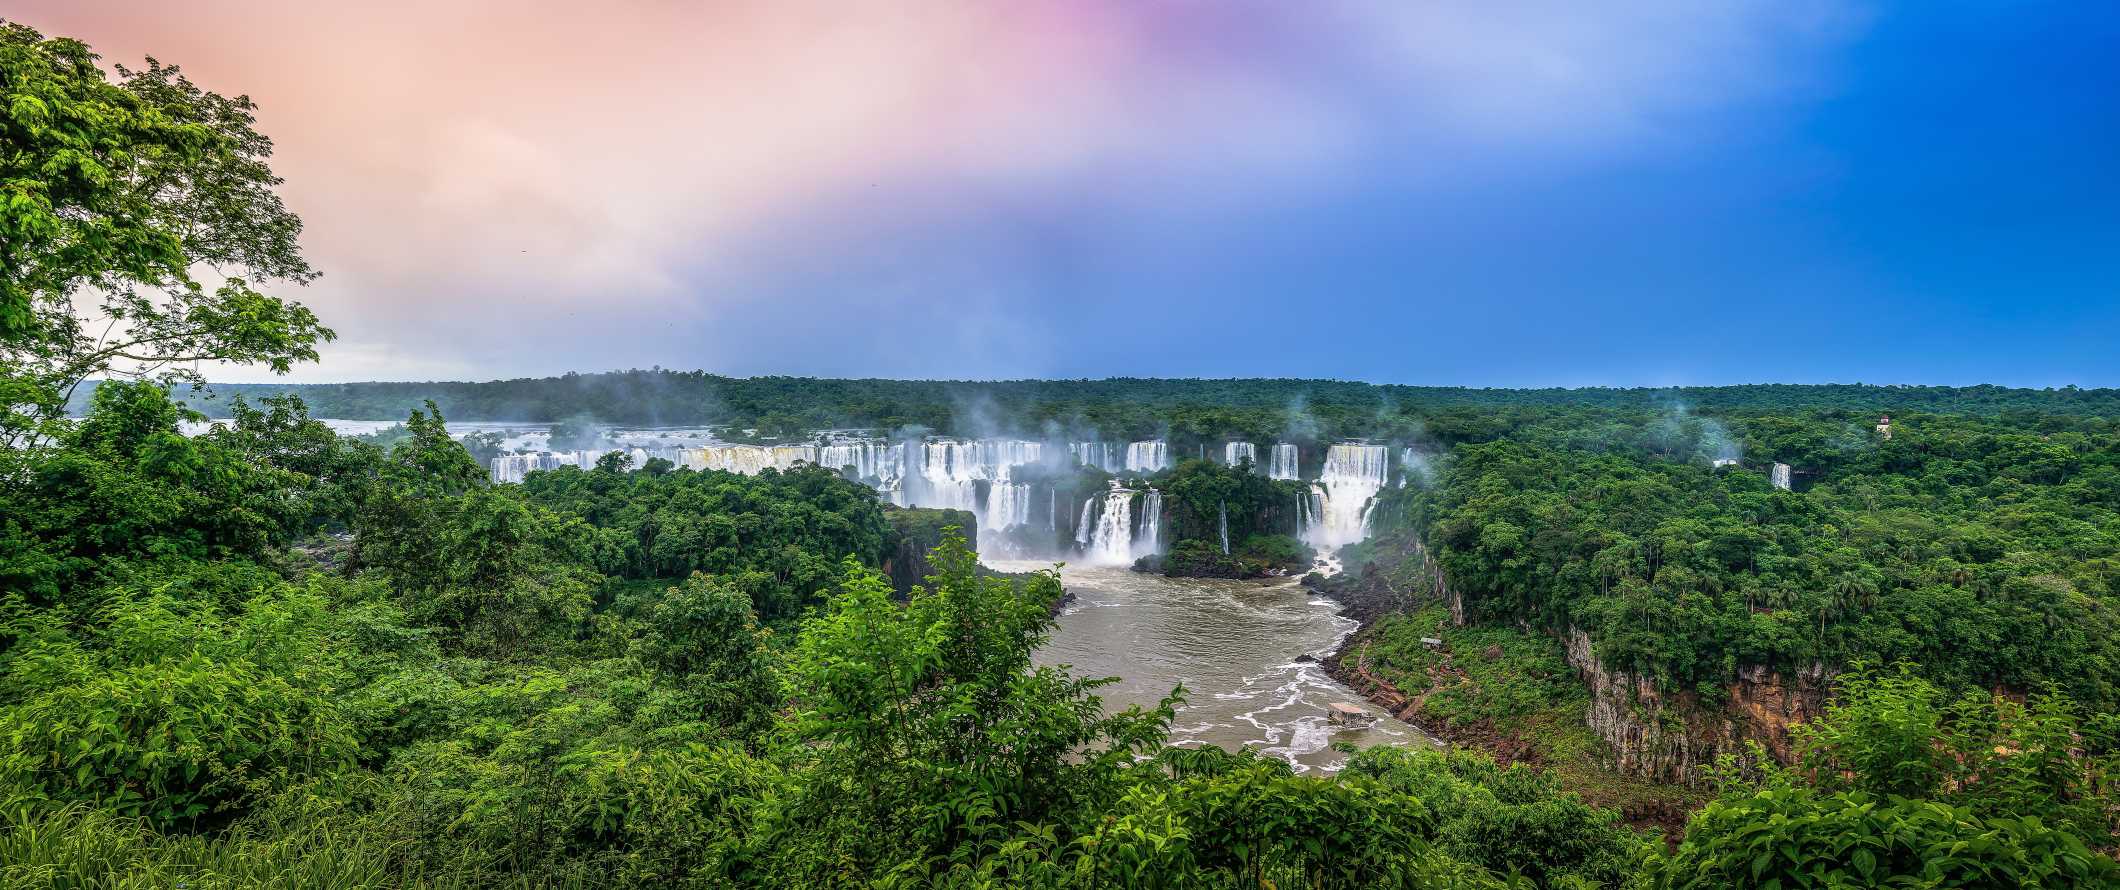 Cachoeiras de Iguasu, semelhantes, no Brasil, entre as magníficas florestas tropicais ao pôr do sol.